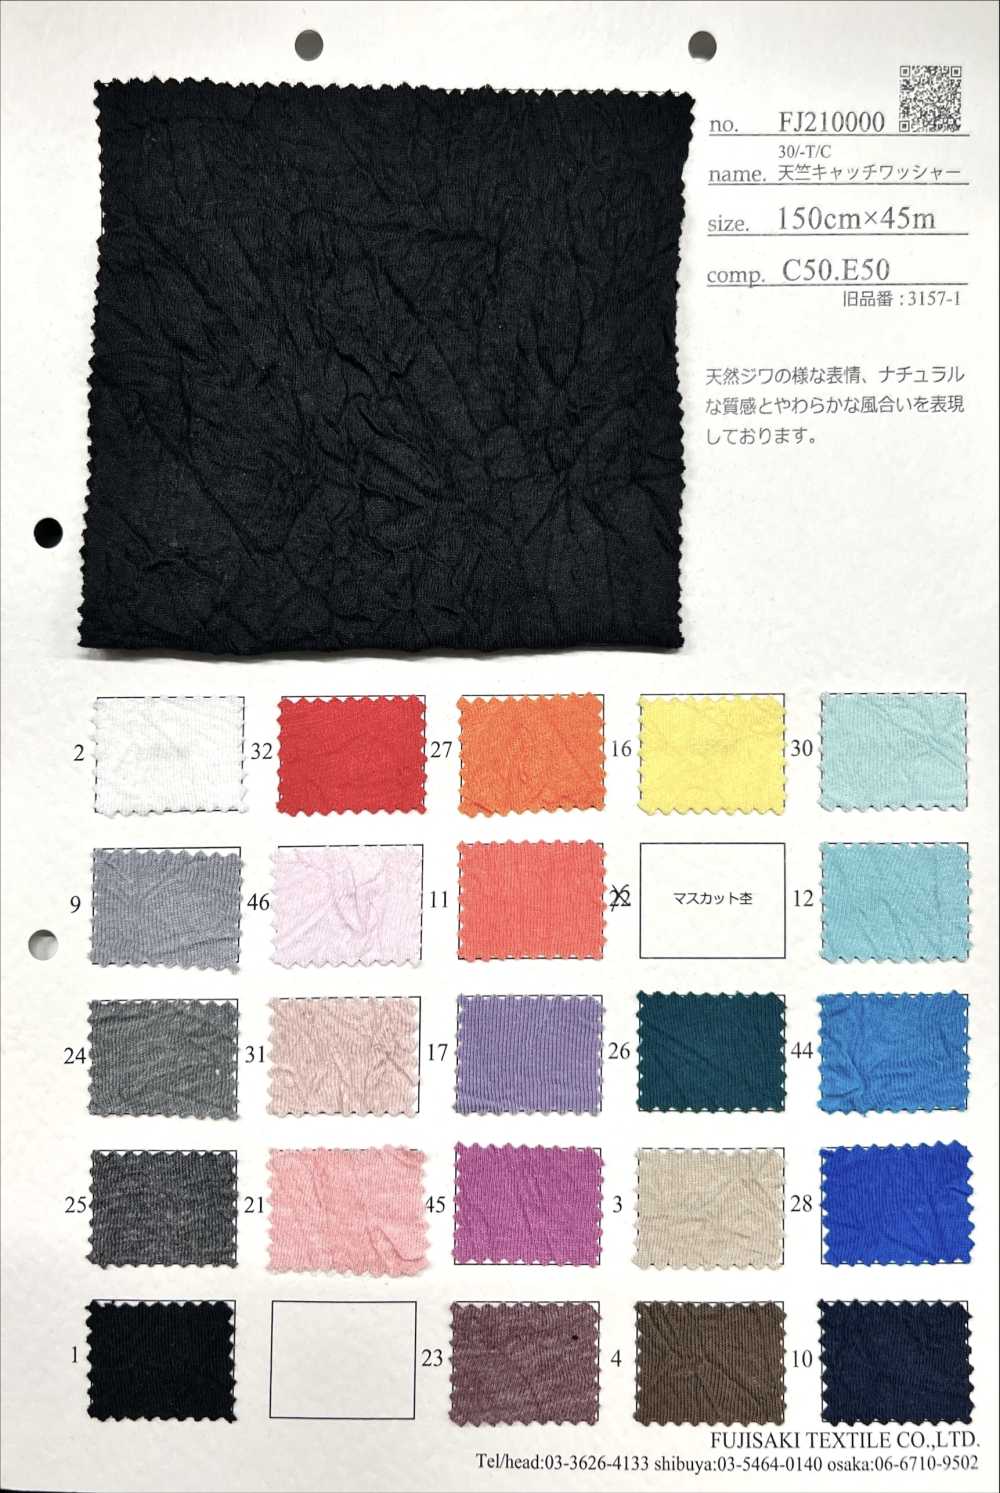 FJ210000 Traitement Des Rondelles De Capture En Jersey 30/-T/C[Fabrication De Textile] Fujisaki Textile